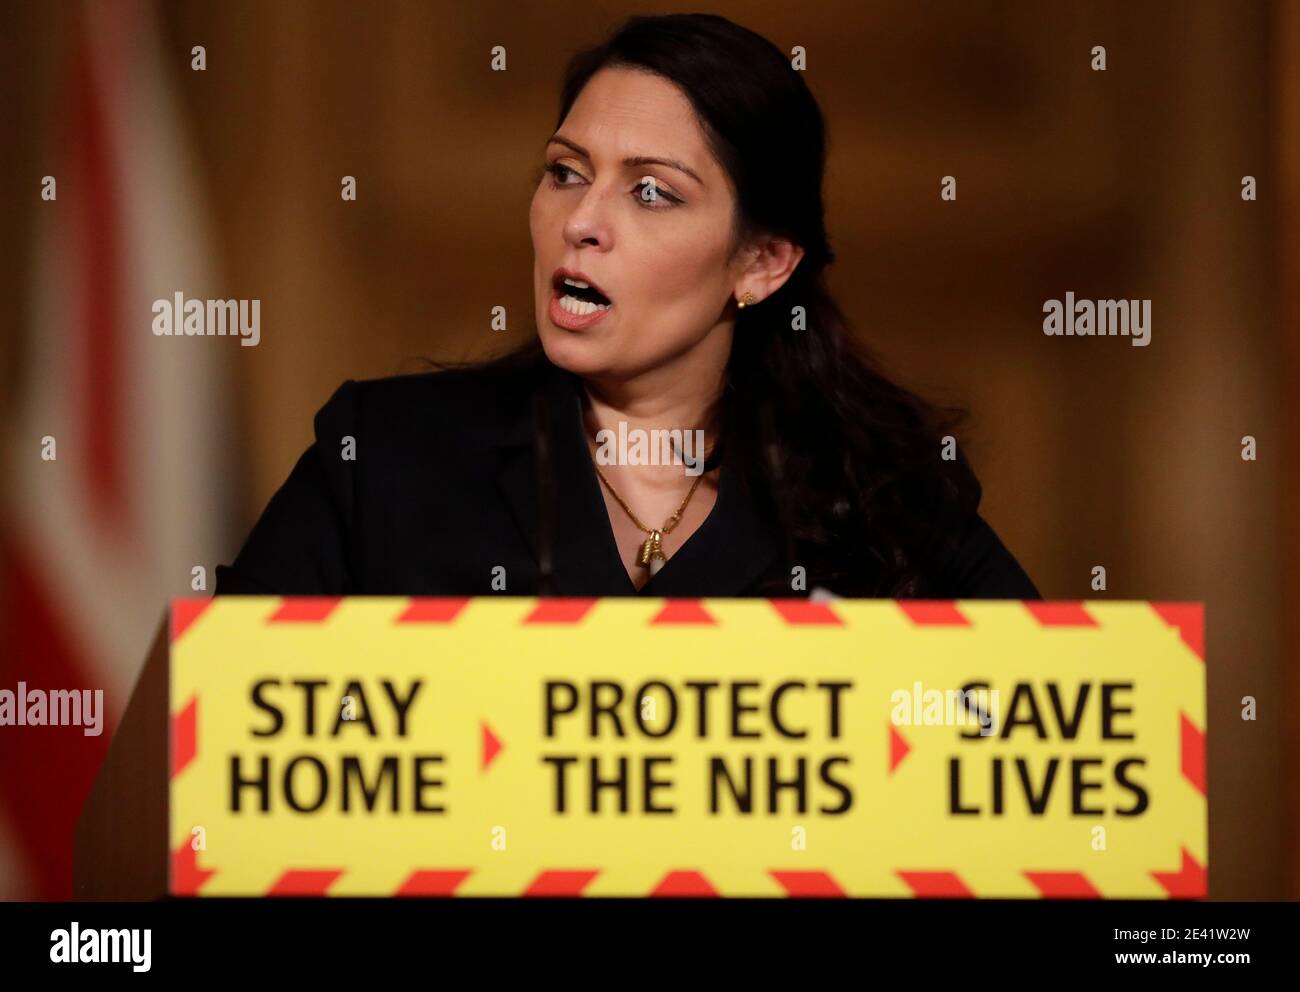 Priti Patel, ministre de l'intérieur, lors d'un exposé des médias sur le coronavirus (Covid-19) à Downing Street, Londres. Date de la photo: Jeudi 21 janvier 2021. Banque D'Images